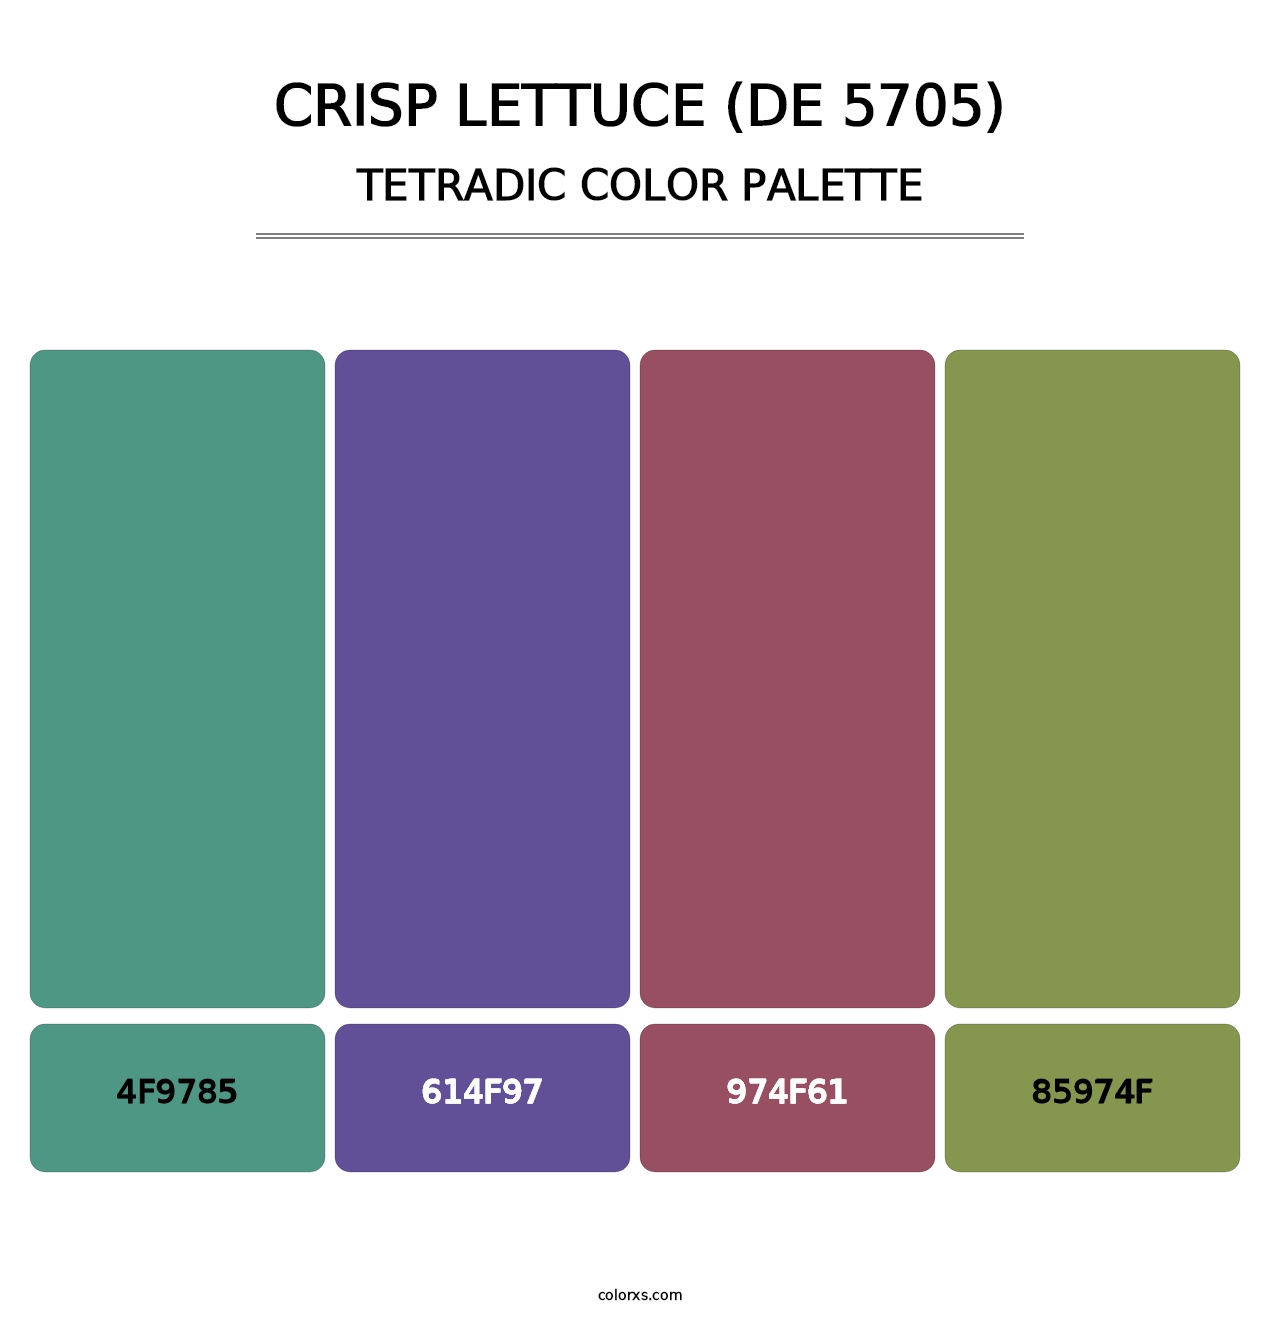 Crisp Lettuce (DE 5705) - Tetradic Color Palette